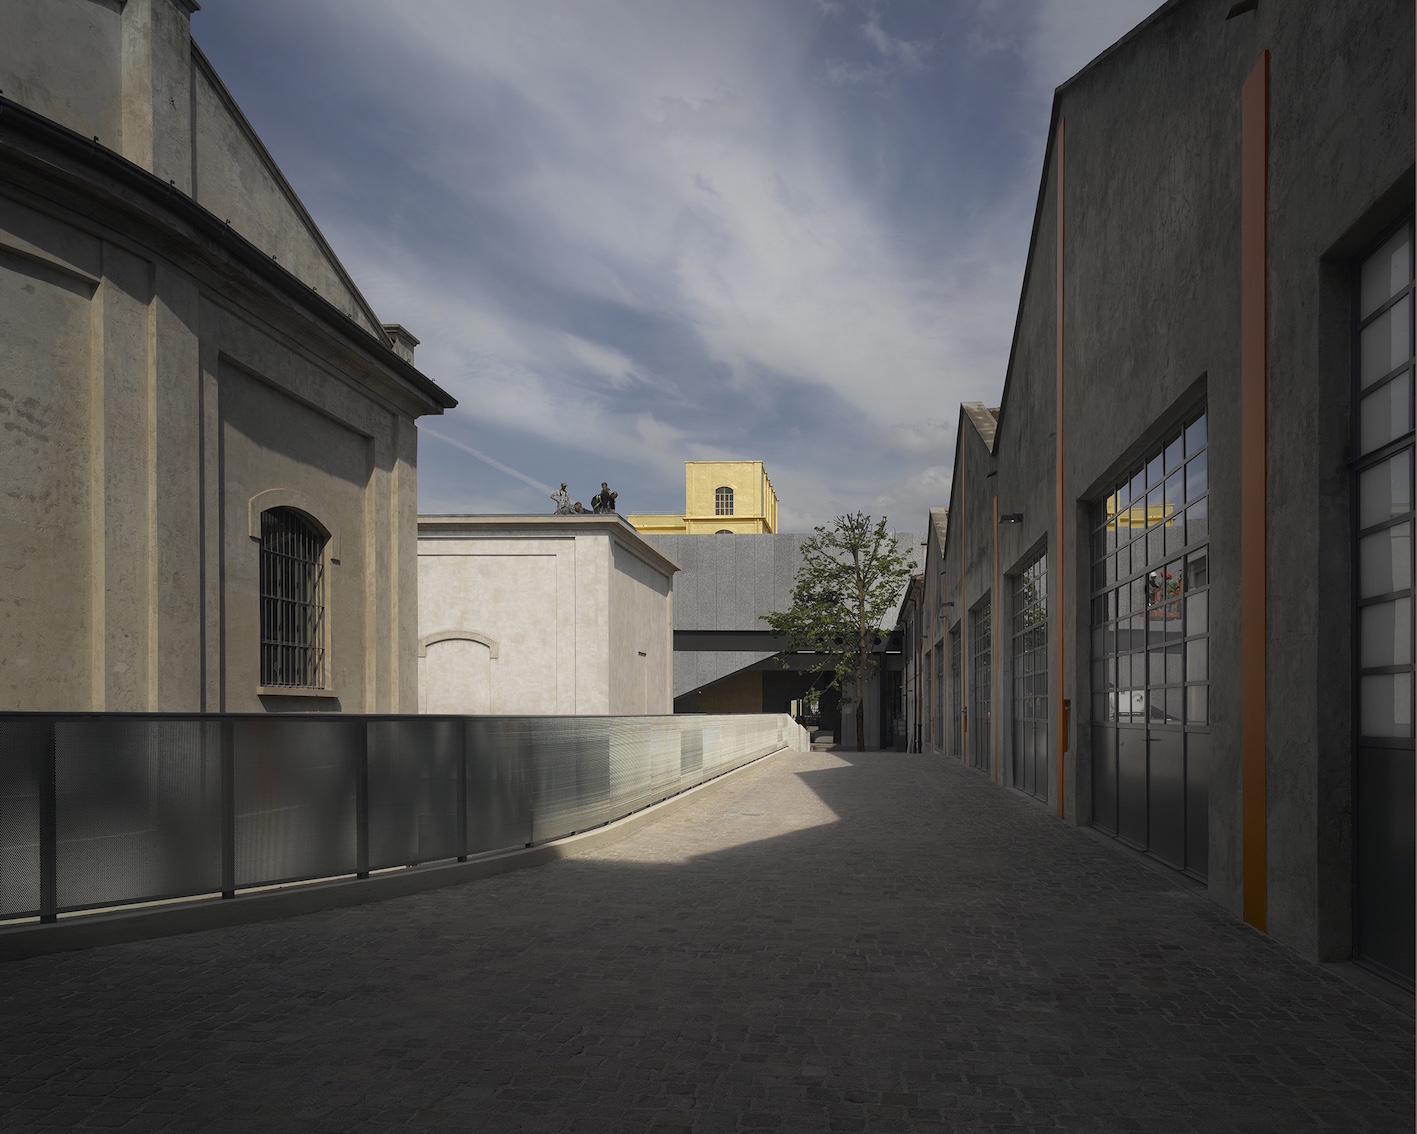 Fondazione Prada. Nuova sede di Milano. Architectural project by OMA. Photo: Bas Princen, 2015. Courtesy: Fondazione Prada.